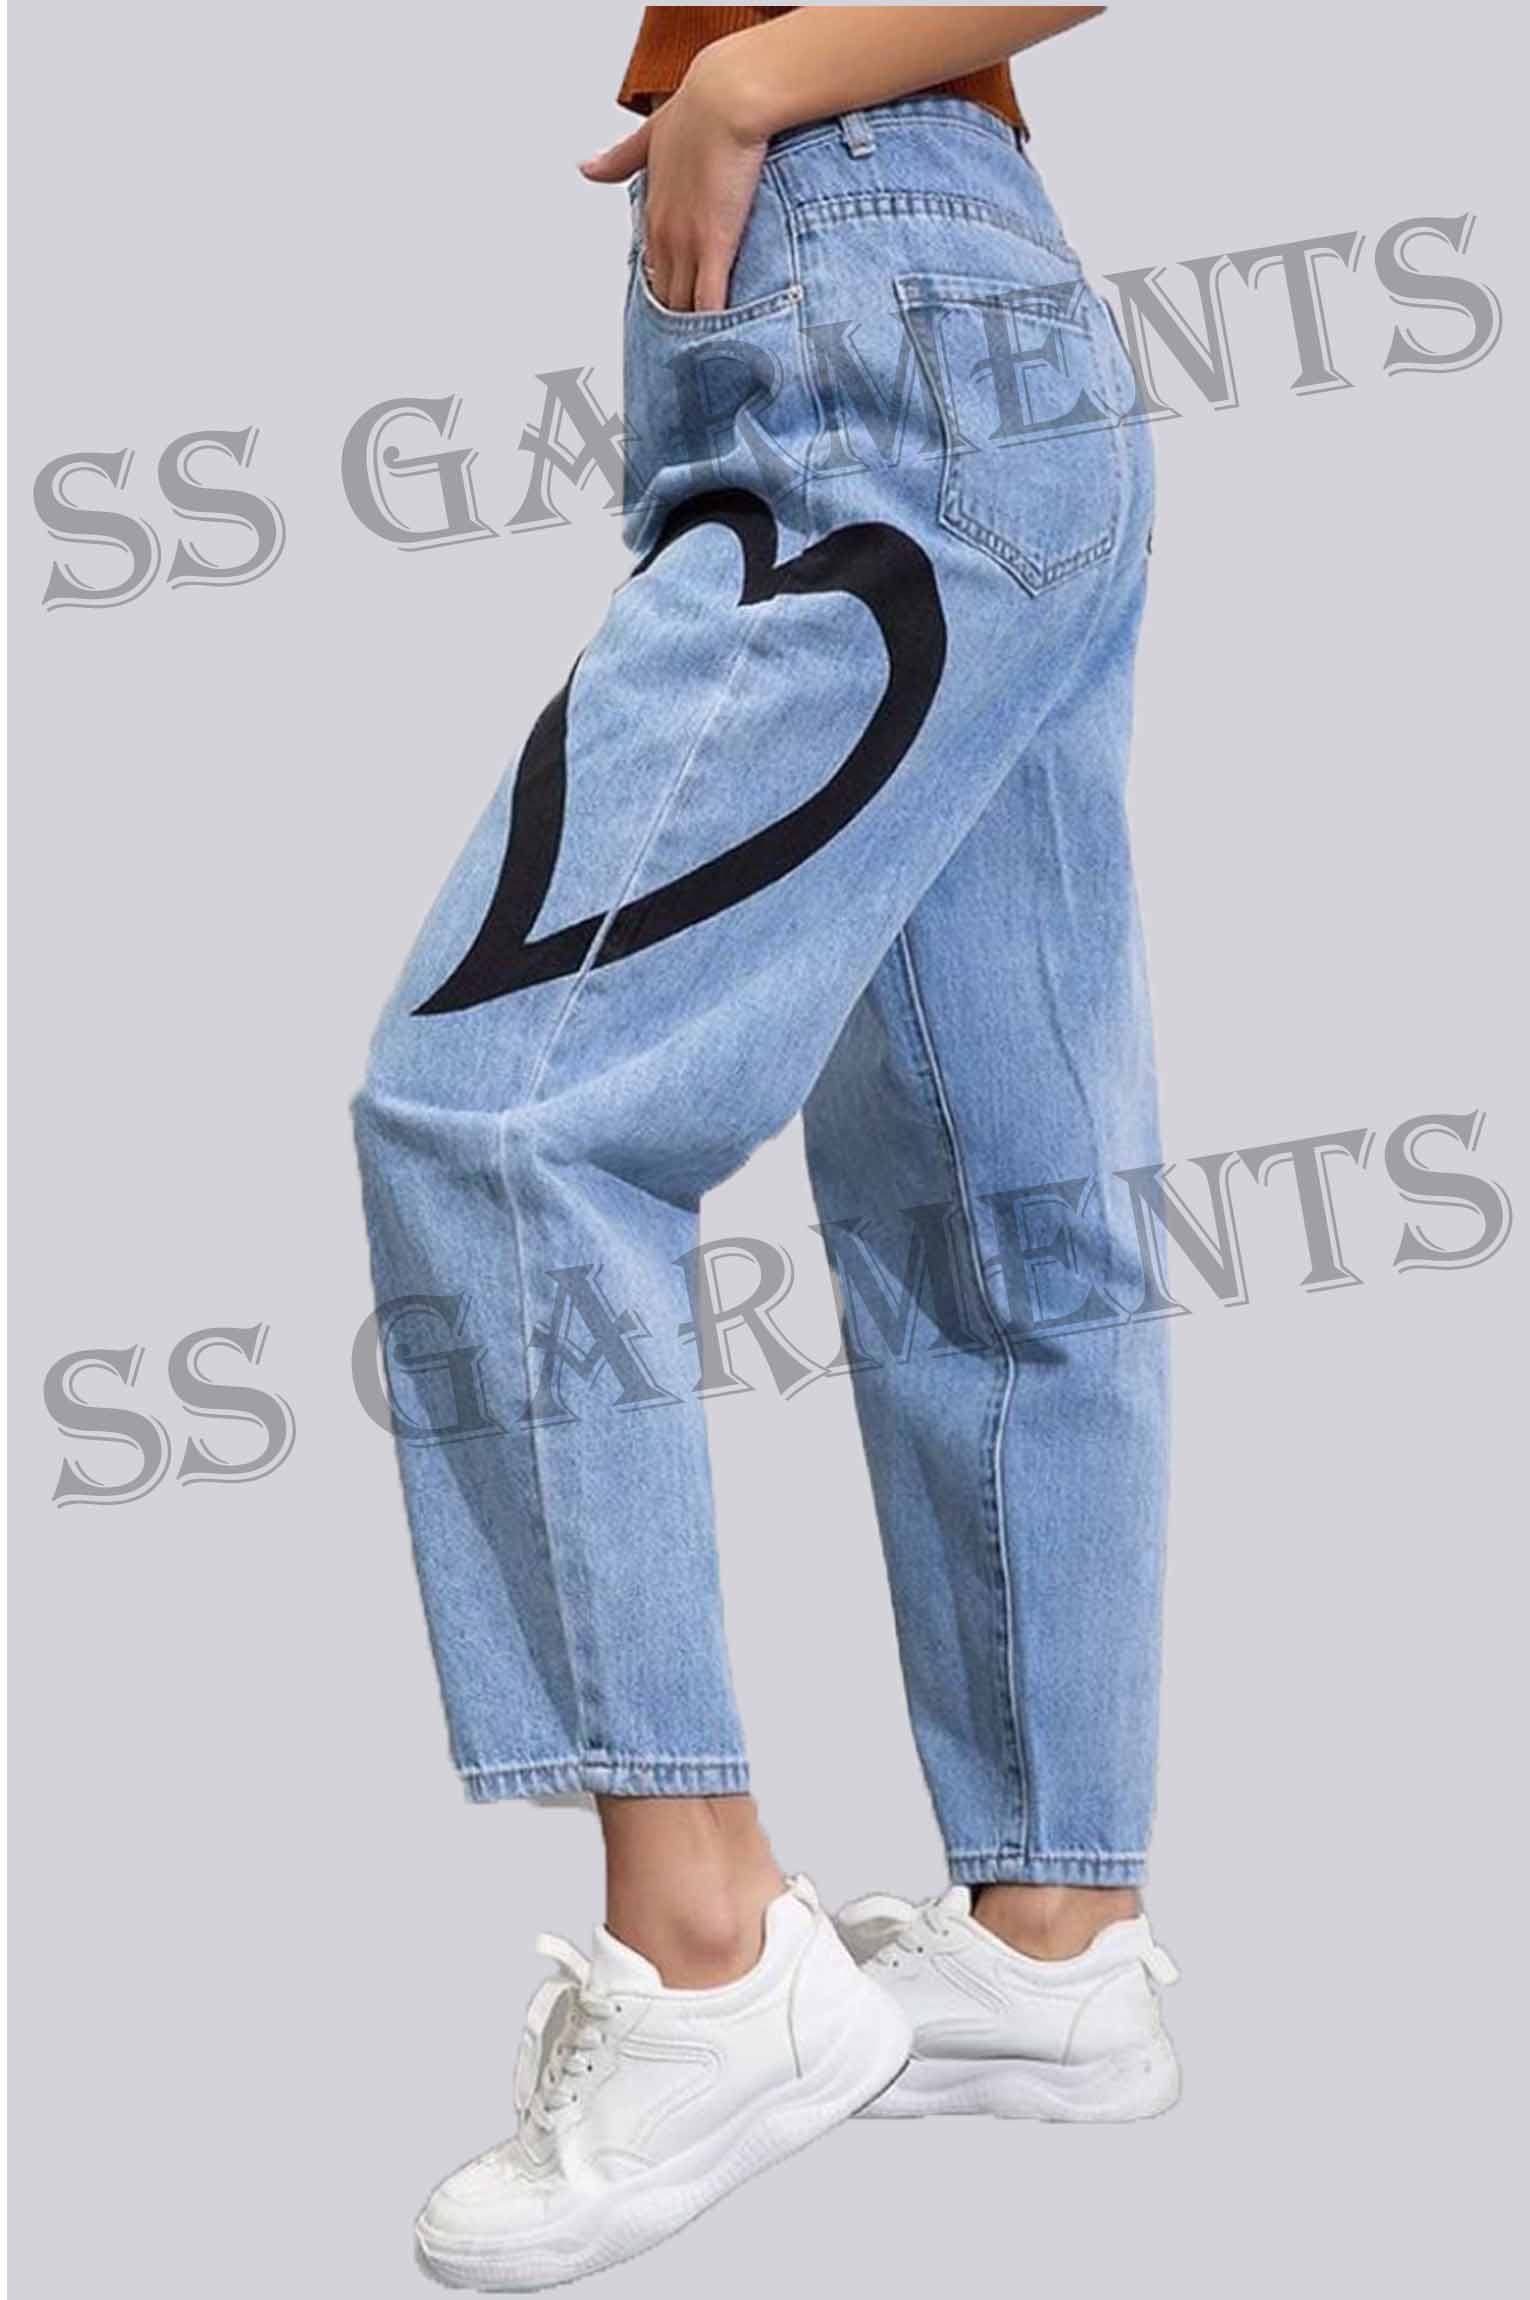 Heart Printed denim jeans pant